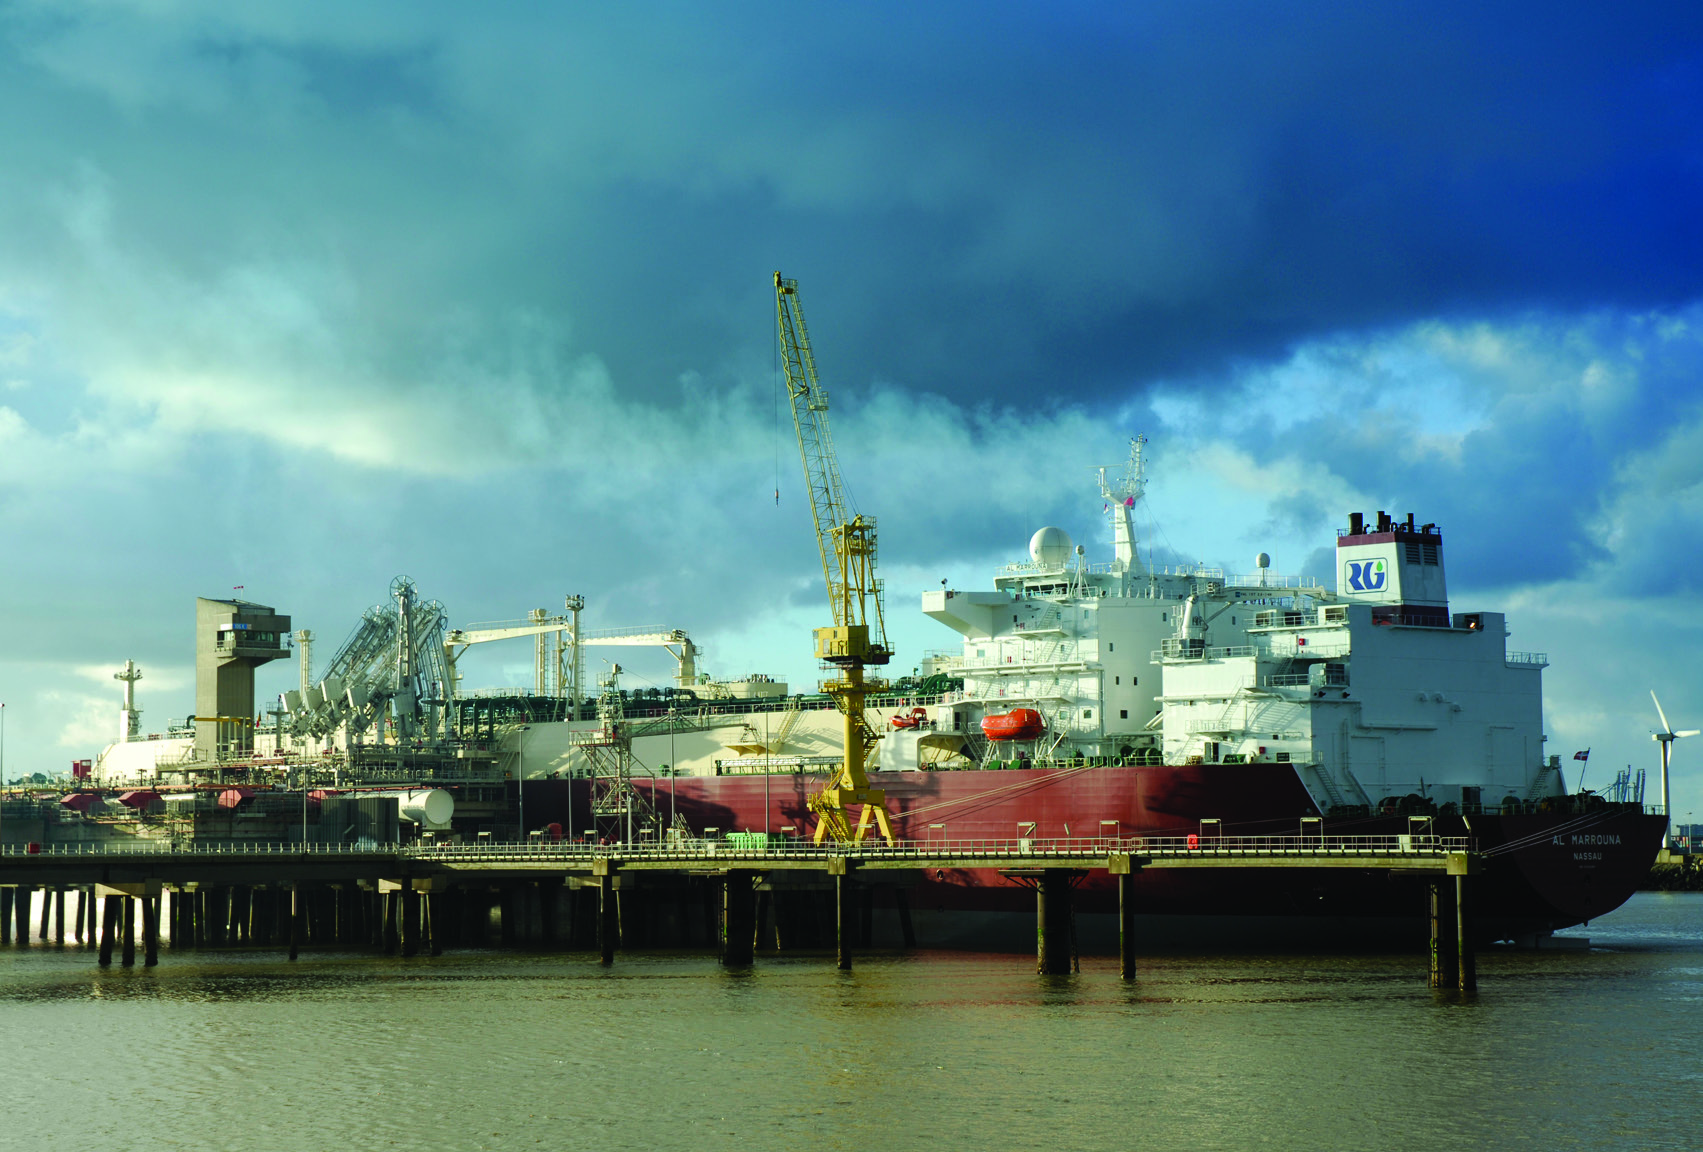 DISCLAIMER Dit document (het LNG terminalling programma ) bevat bepaalde informatie over de LNG terminal van Zeebrugge en de bijbehorende LNG diensten die door Fluxys LNG in die terminal worden